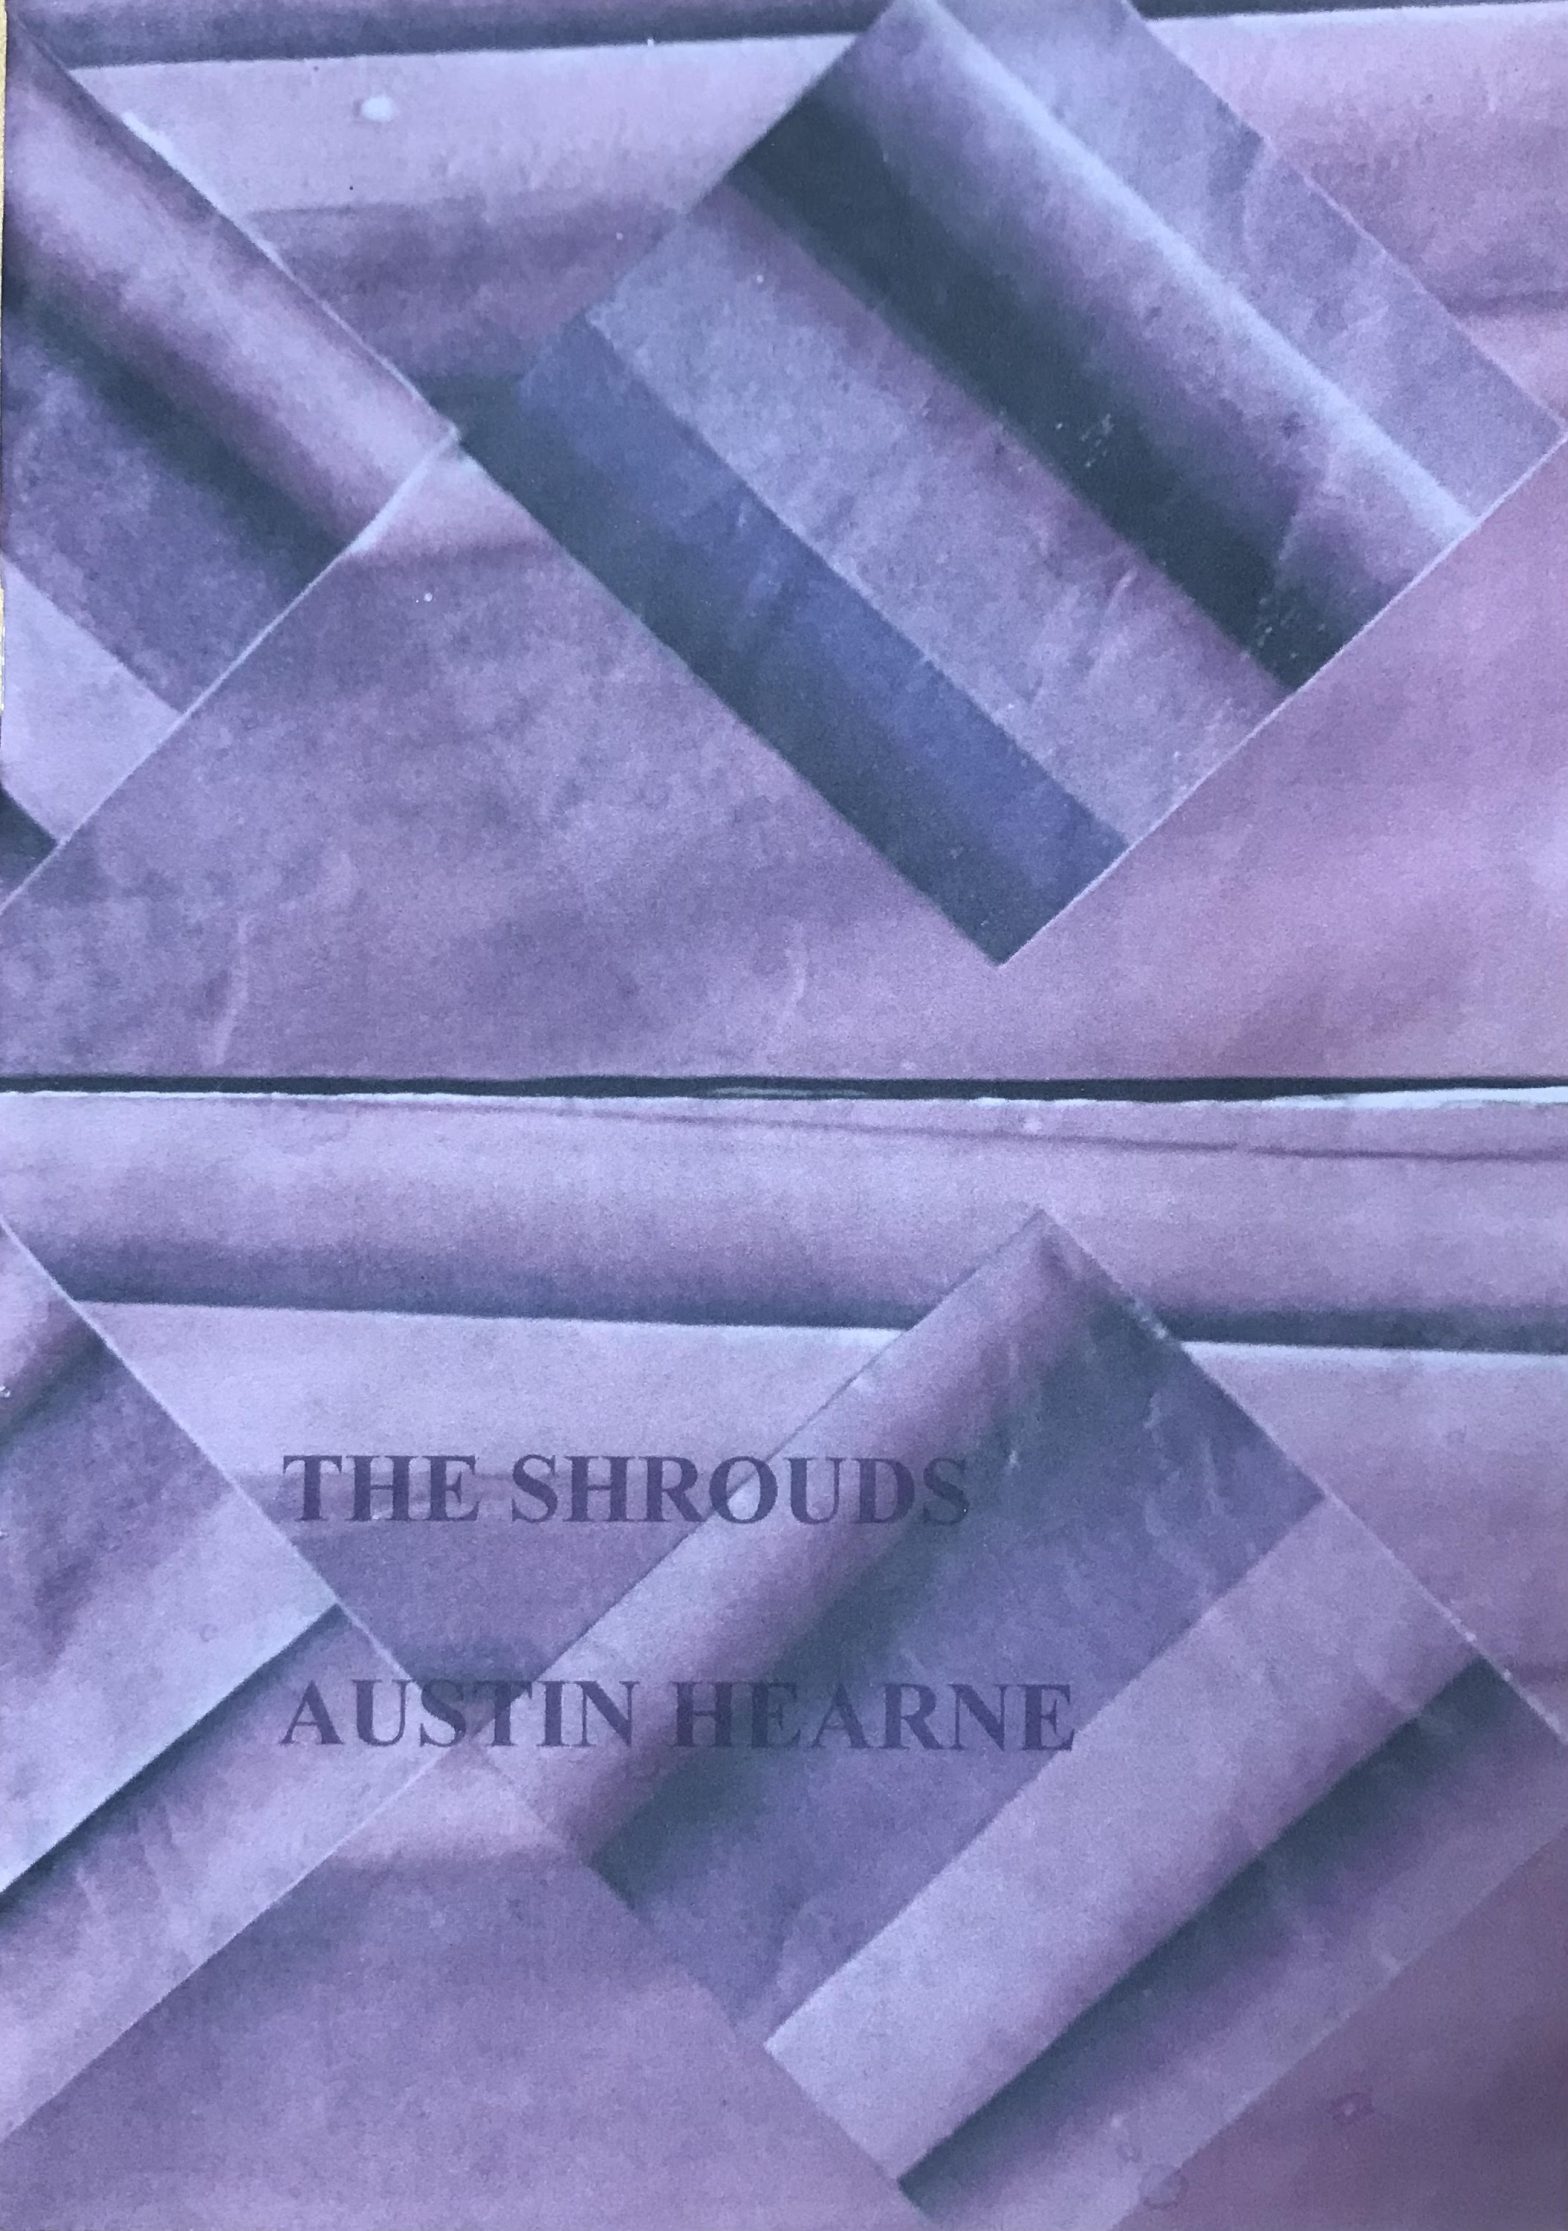 The Shrouds Austin Hearne